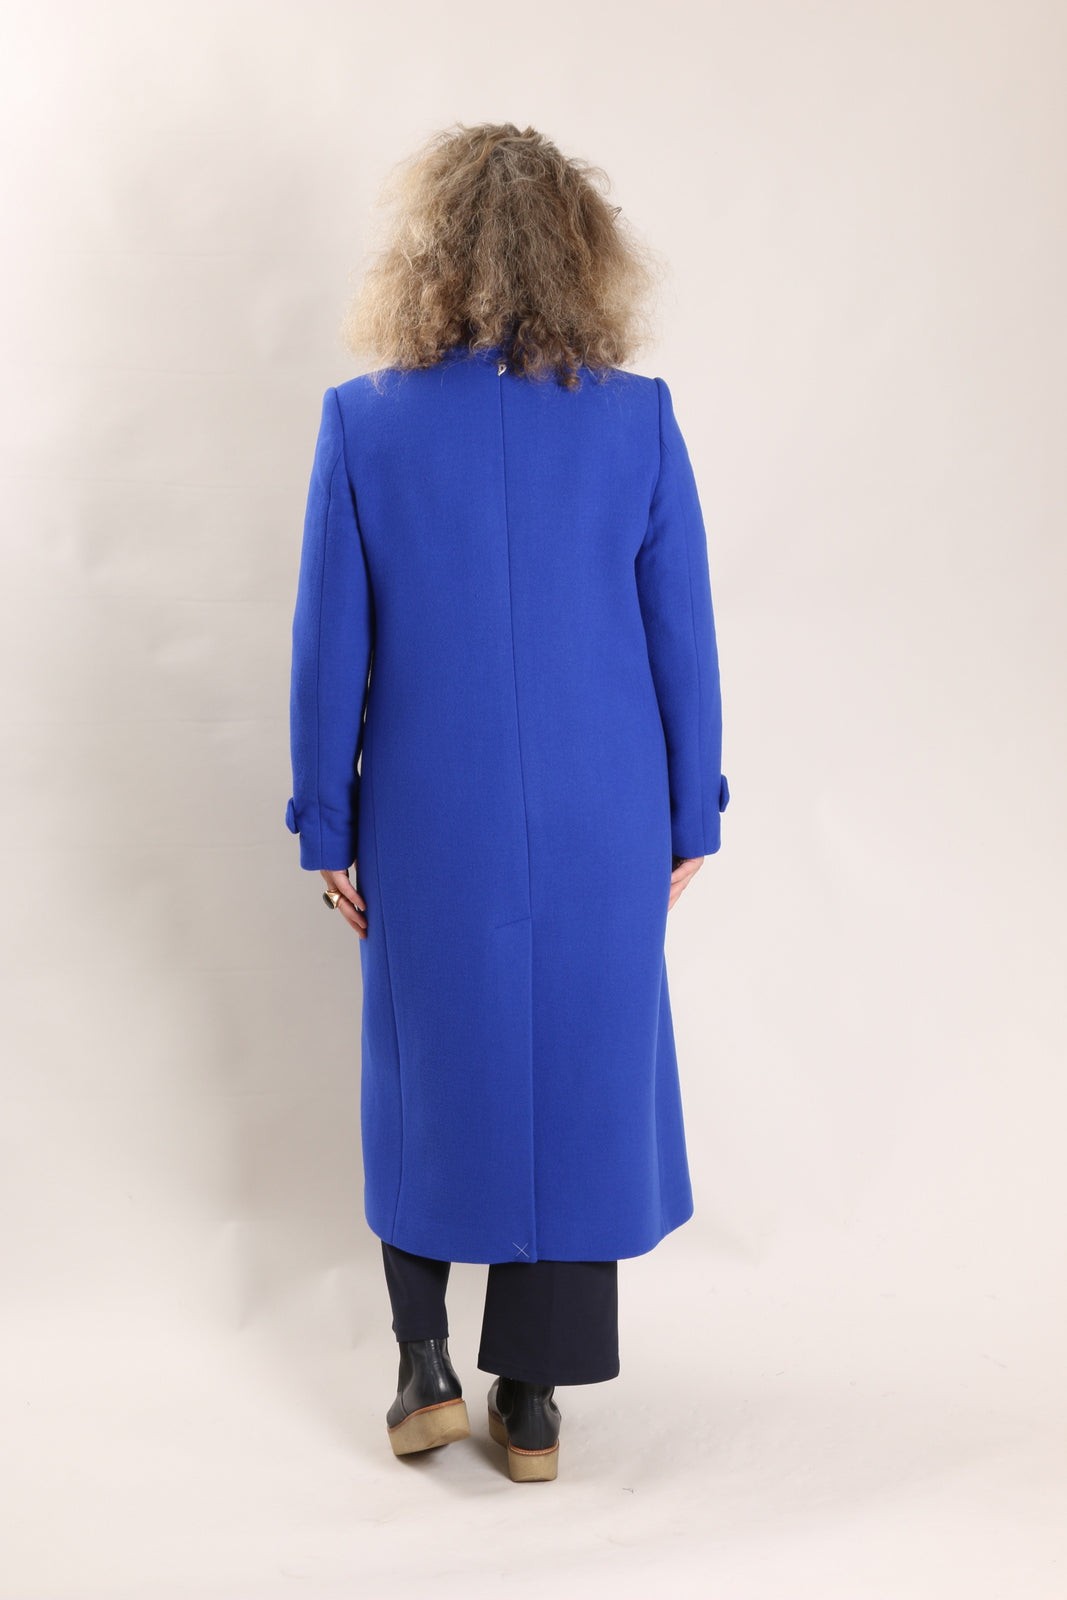 Manteau Manteau bleu dur Dondup vendu par Bleu Natier